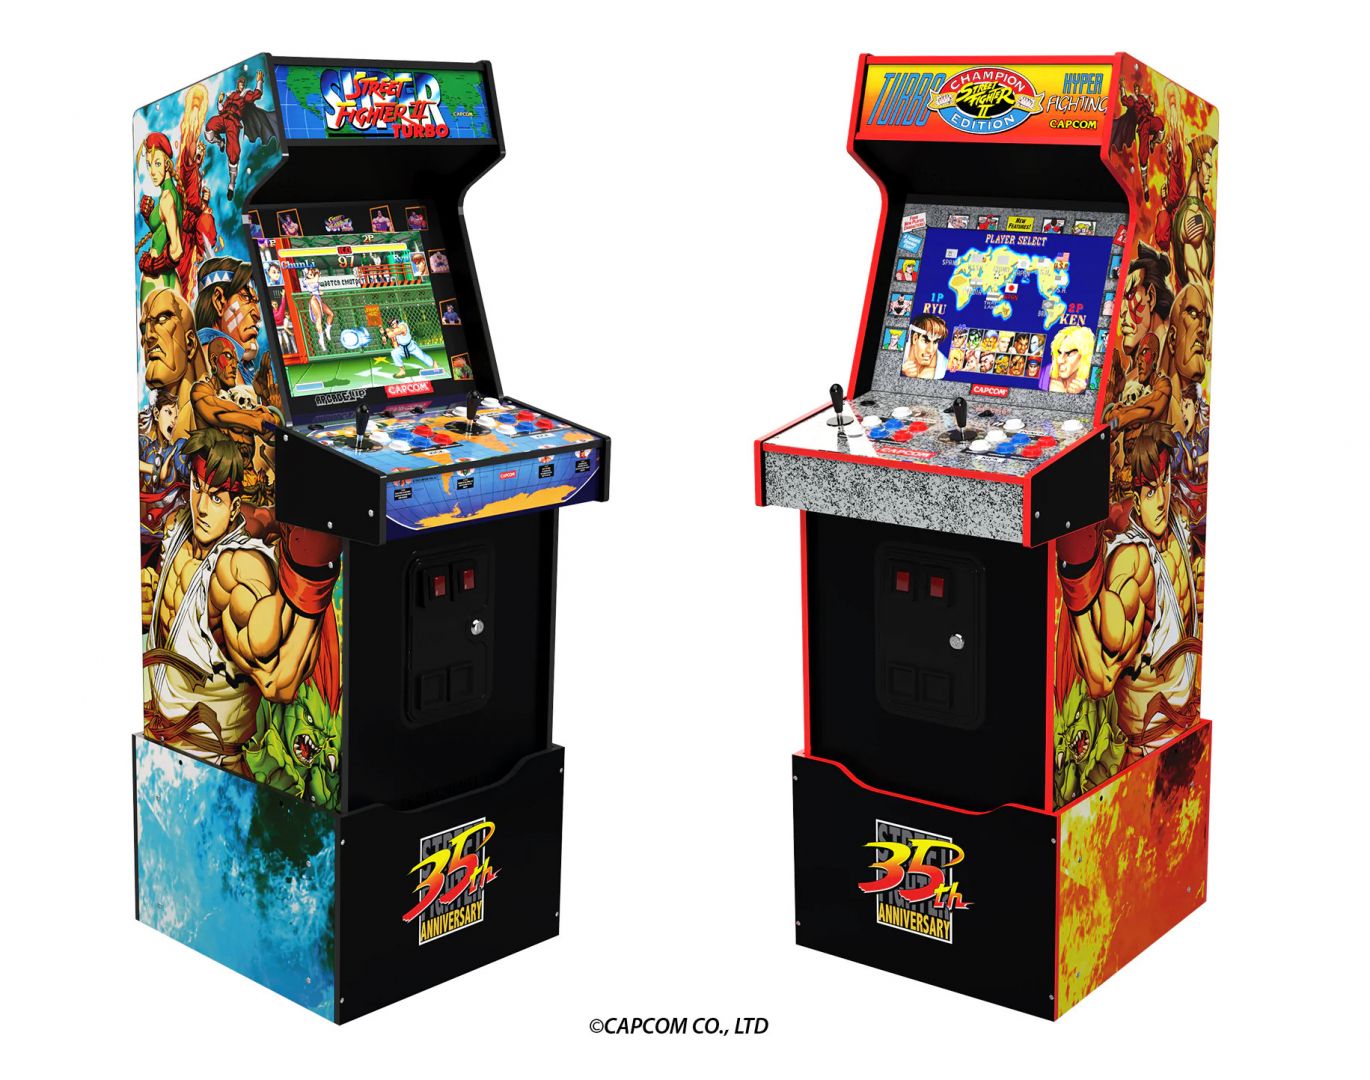 Co-Optimus - News - Arcade1Up Announces New Capcom Legacy Arcade